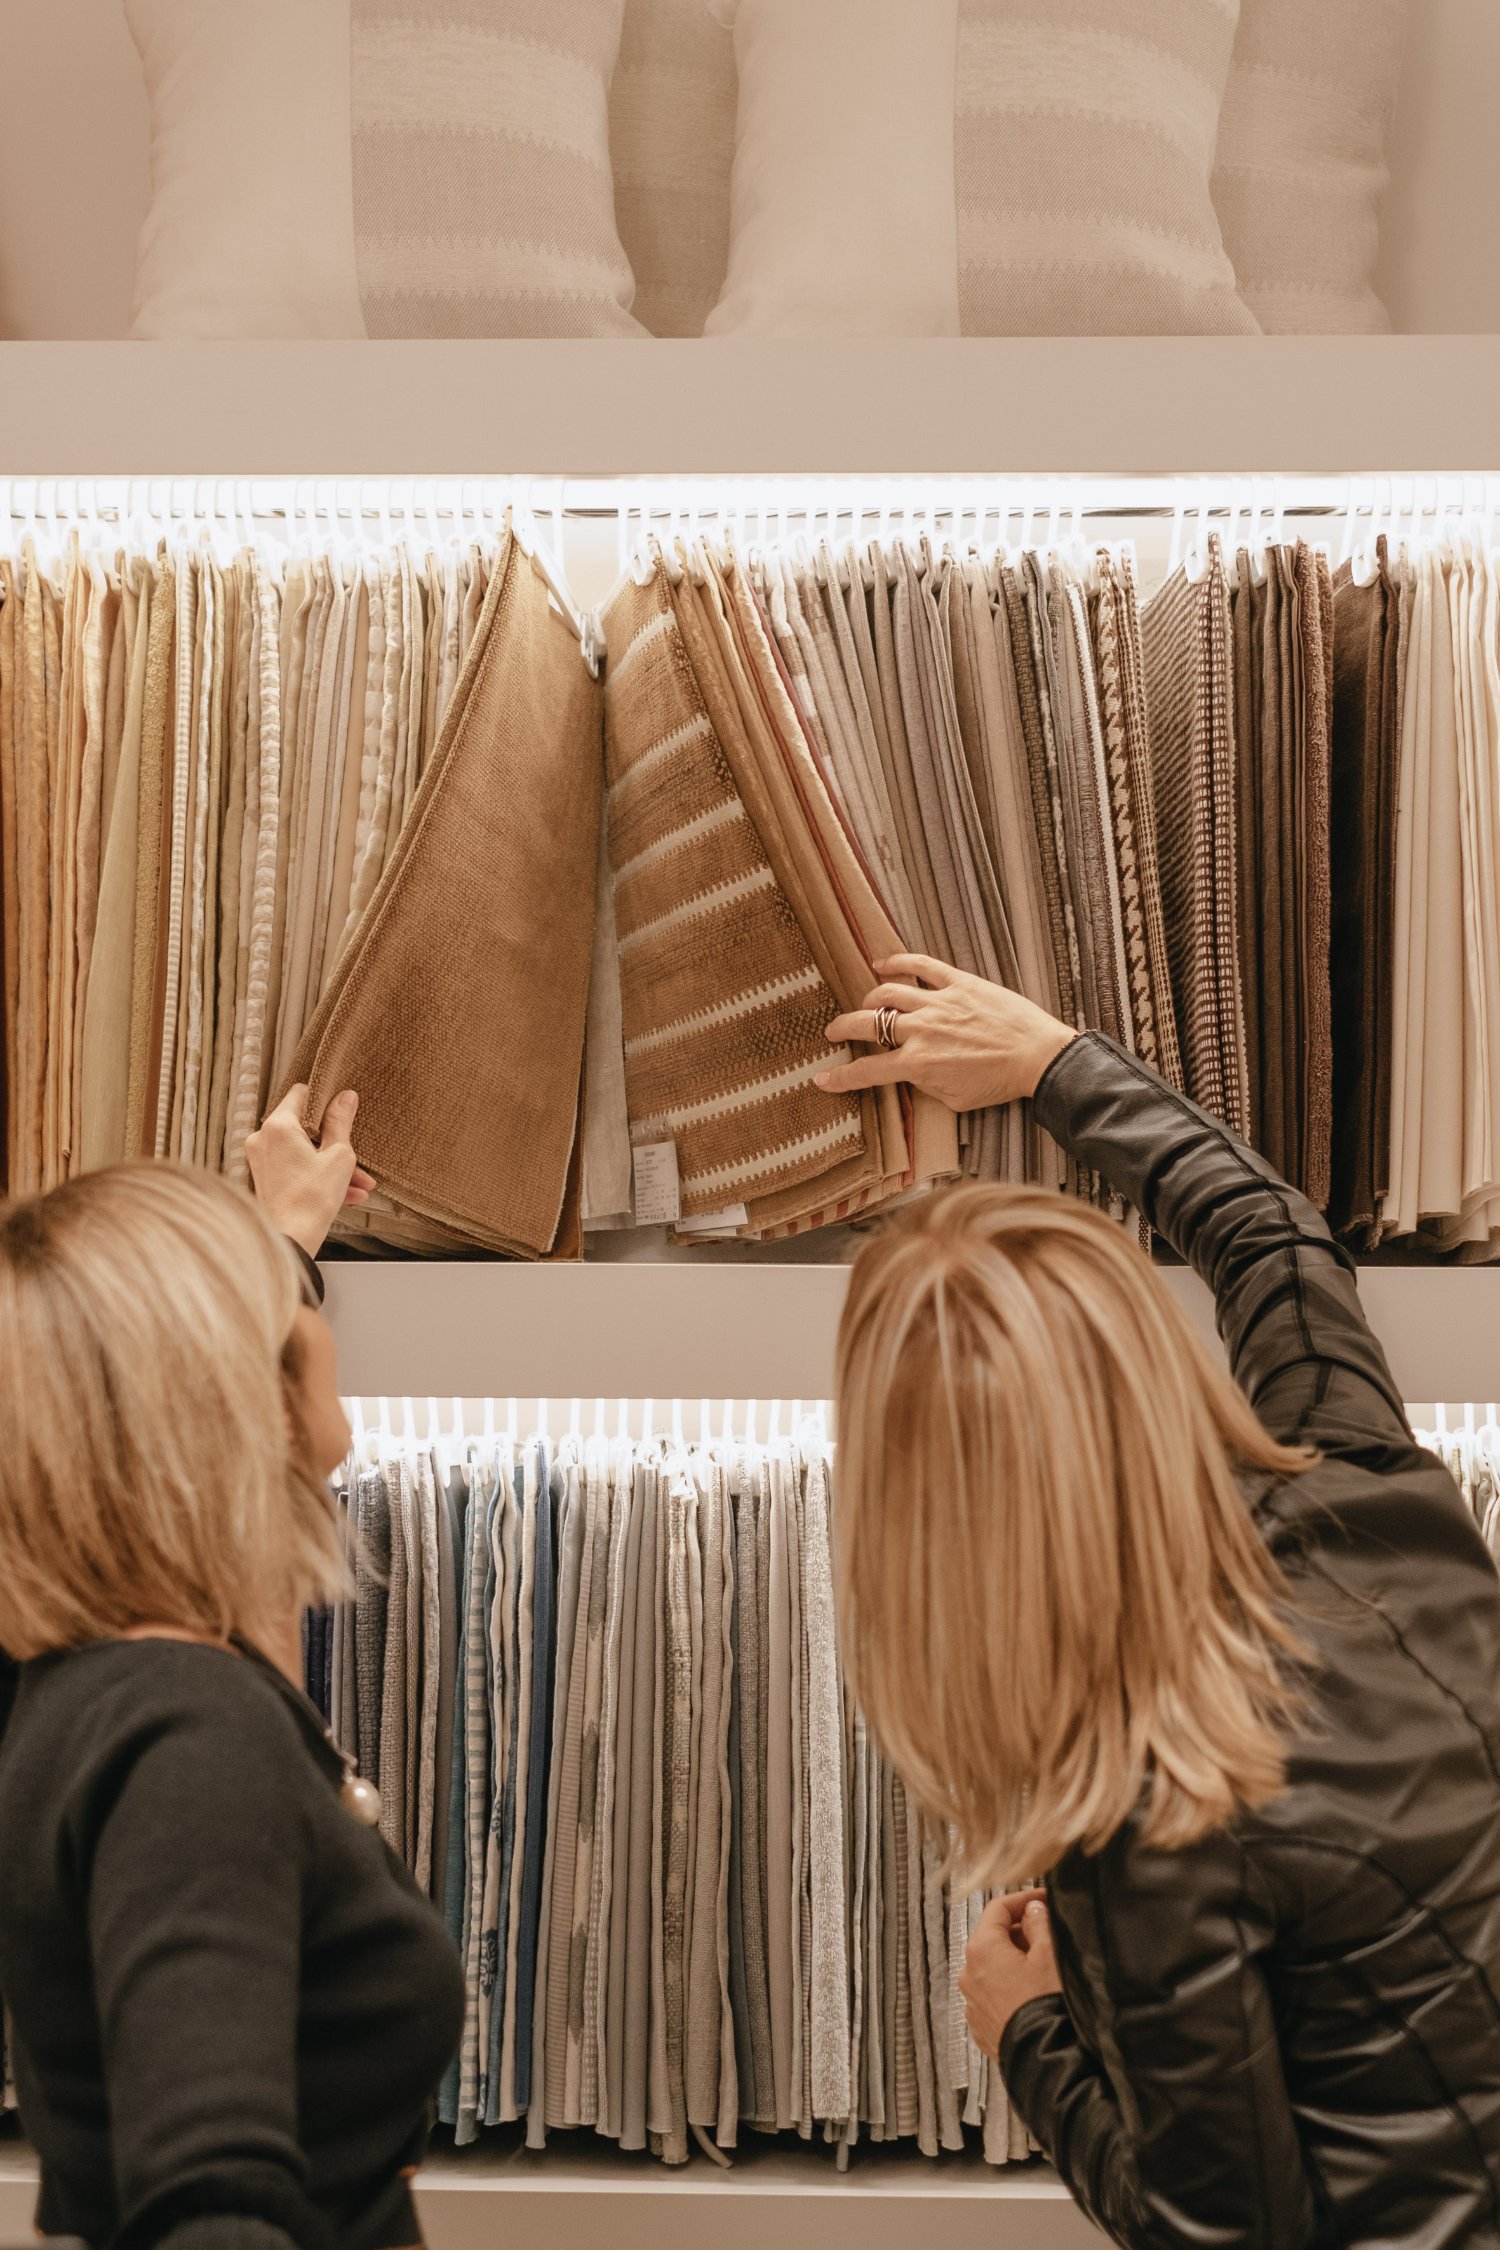 L'arredatrice di interni Stefania Luraghi, fondatrice di Elles Interior Design Studio, mentre sceglie i tessuti nello showroom di un fornitore.